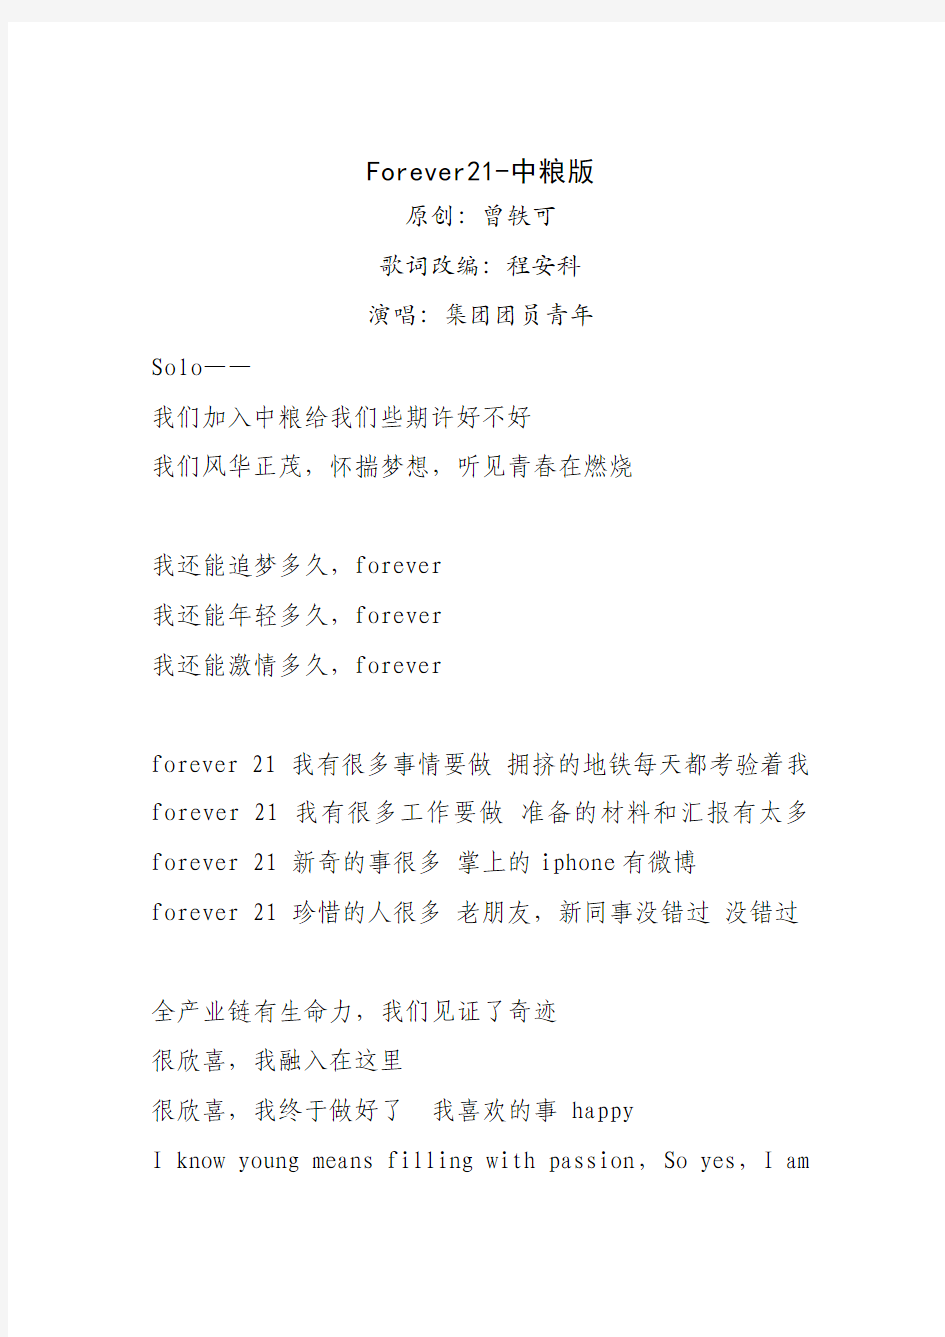 Forever21-中粮版-歌词